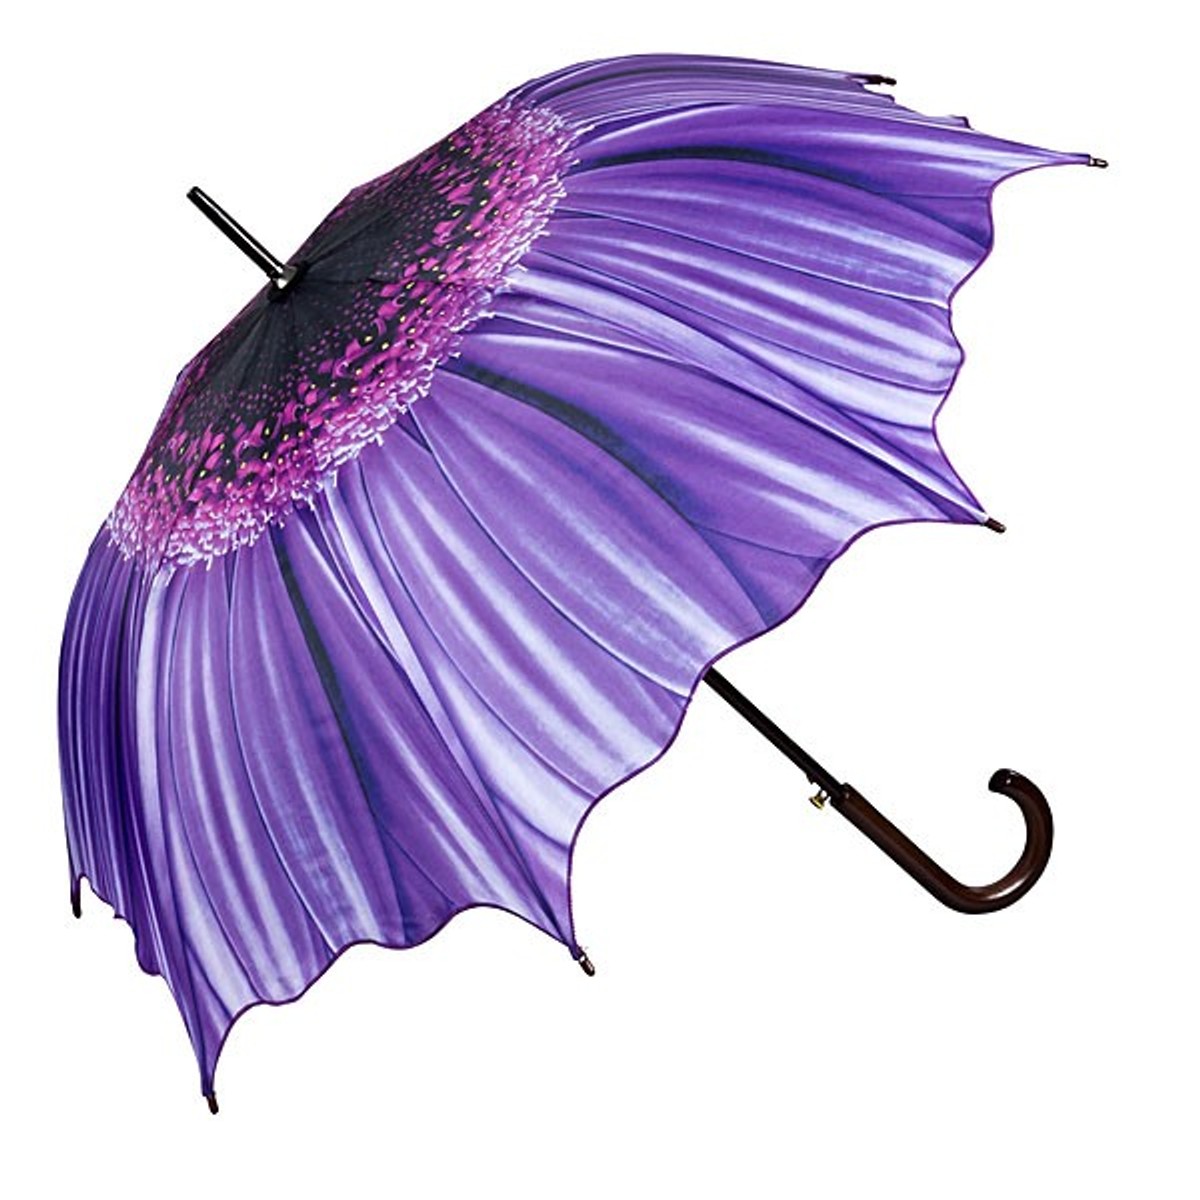 Myschirm Designer Umbrella With Floral Motif In Purple Elegant Umbrella Luxury Design 5992